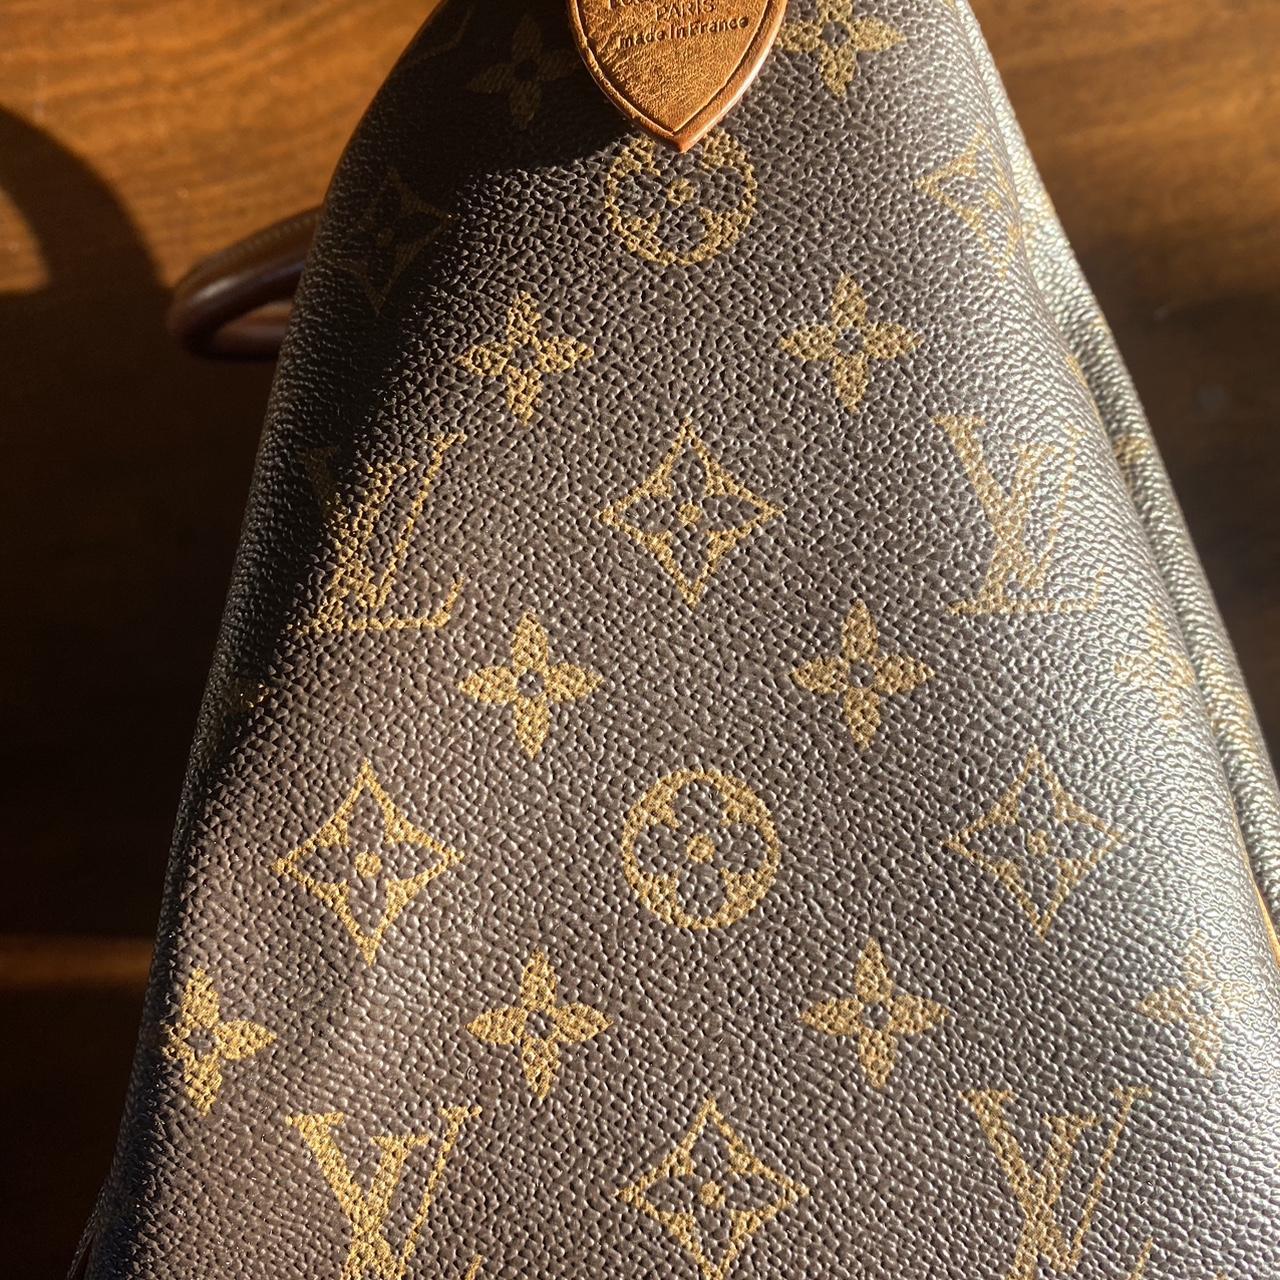 Vintage Louis Vuitton (MB0031) Has some sun damage - Depop